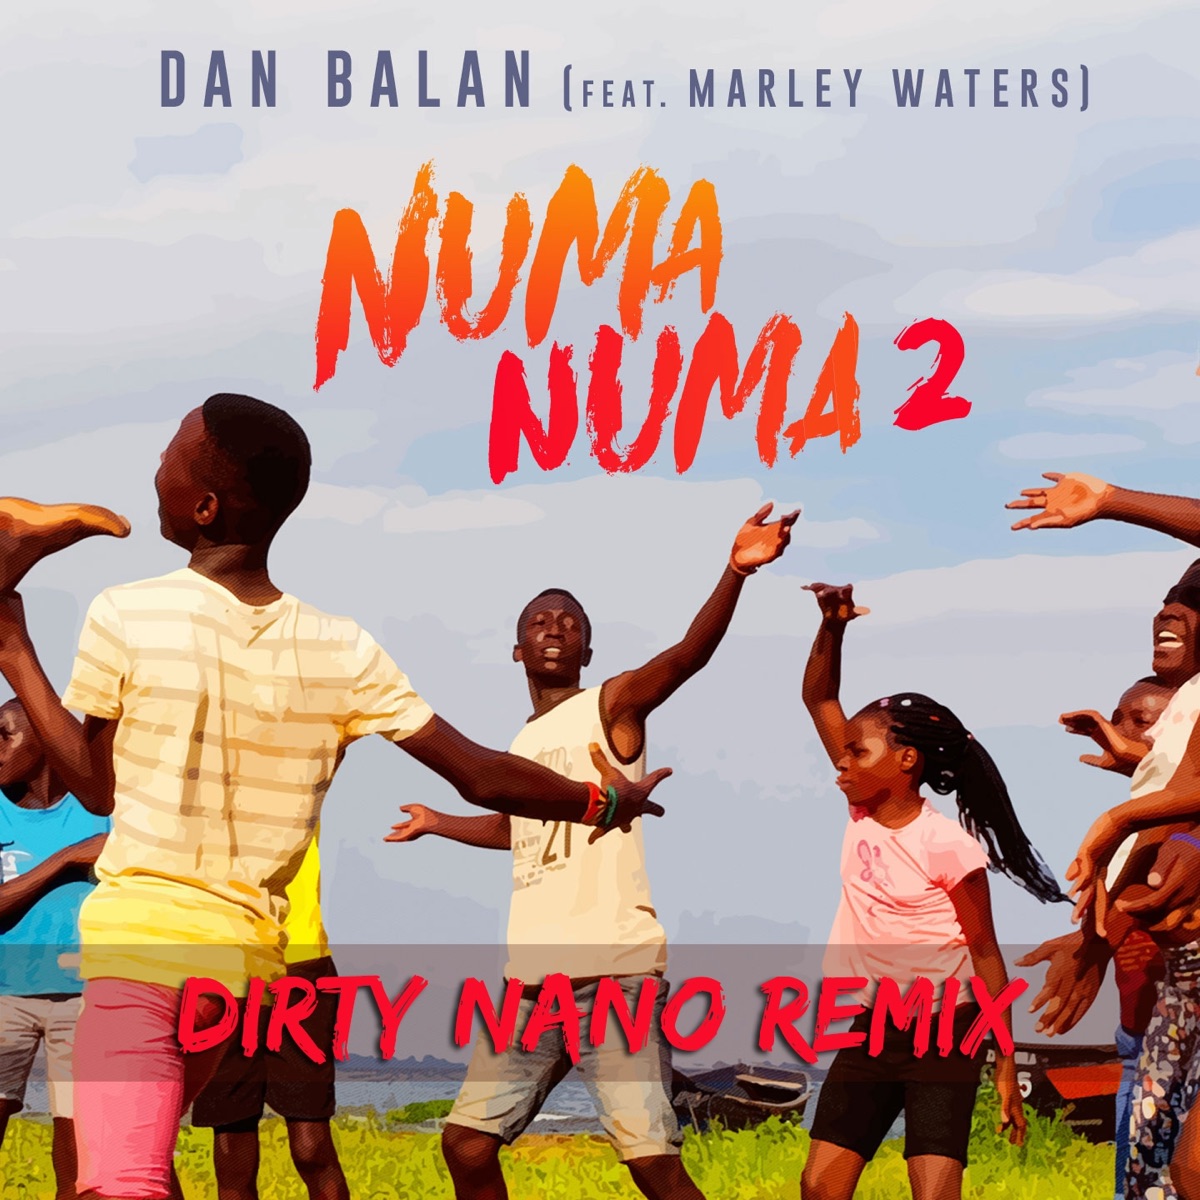 Numa Numa 2 (feat. Marley Waters) - Single by Dan Balan on Apple Music